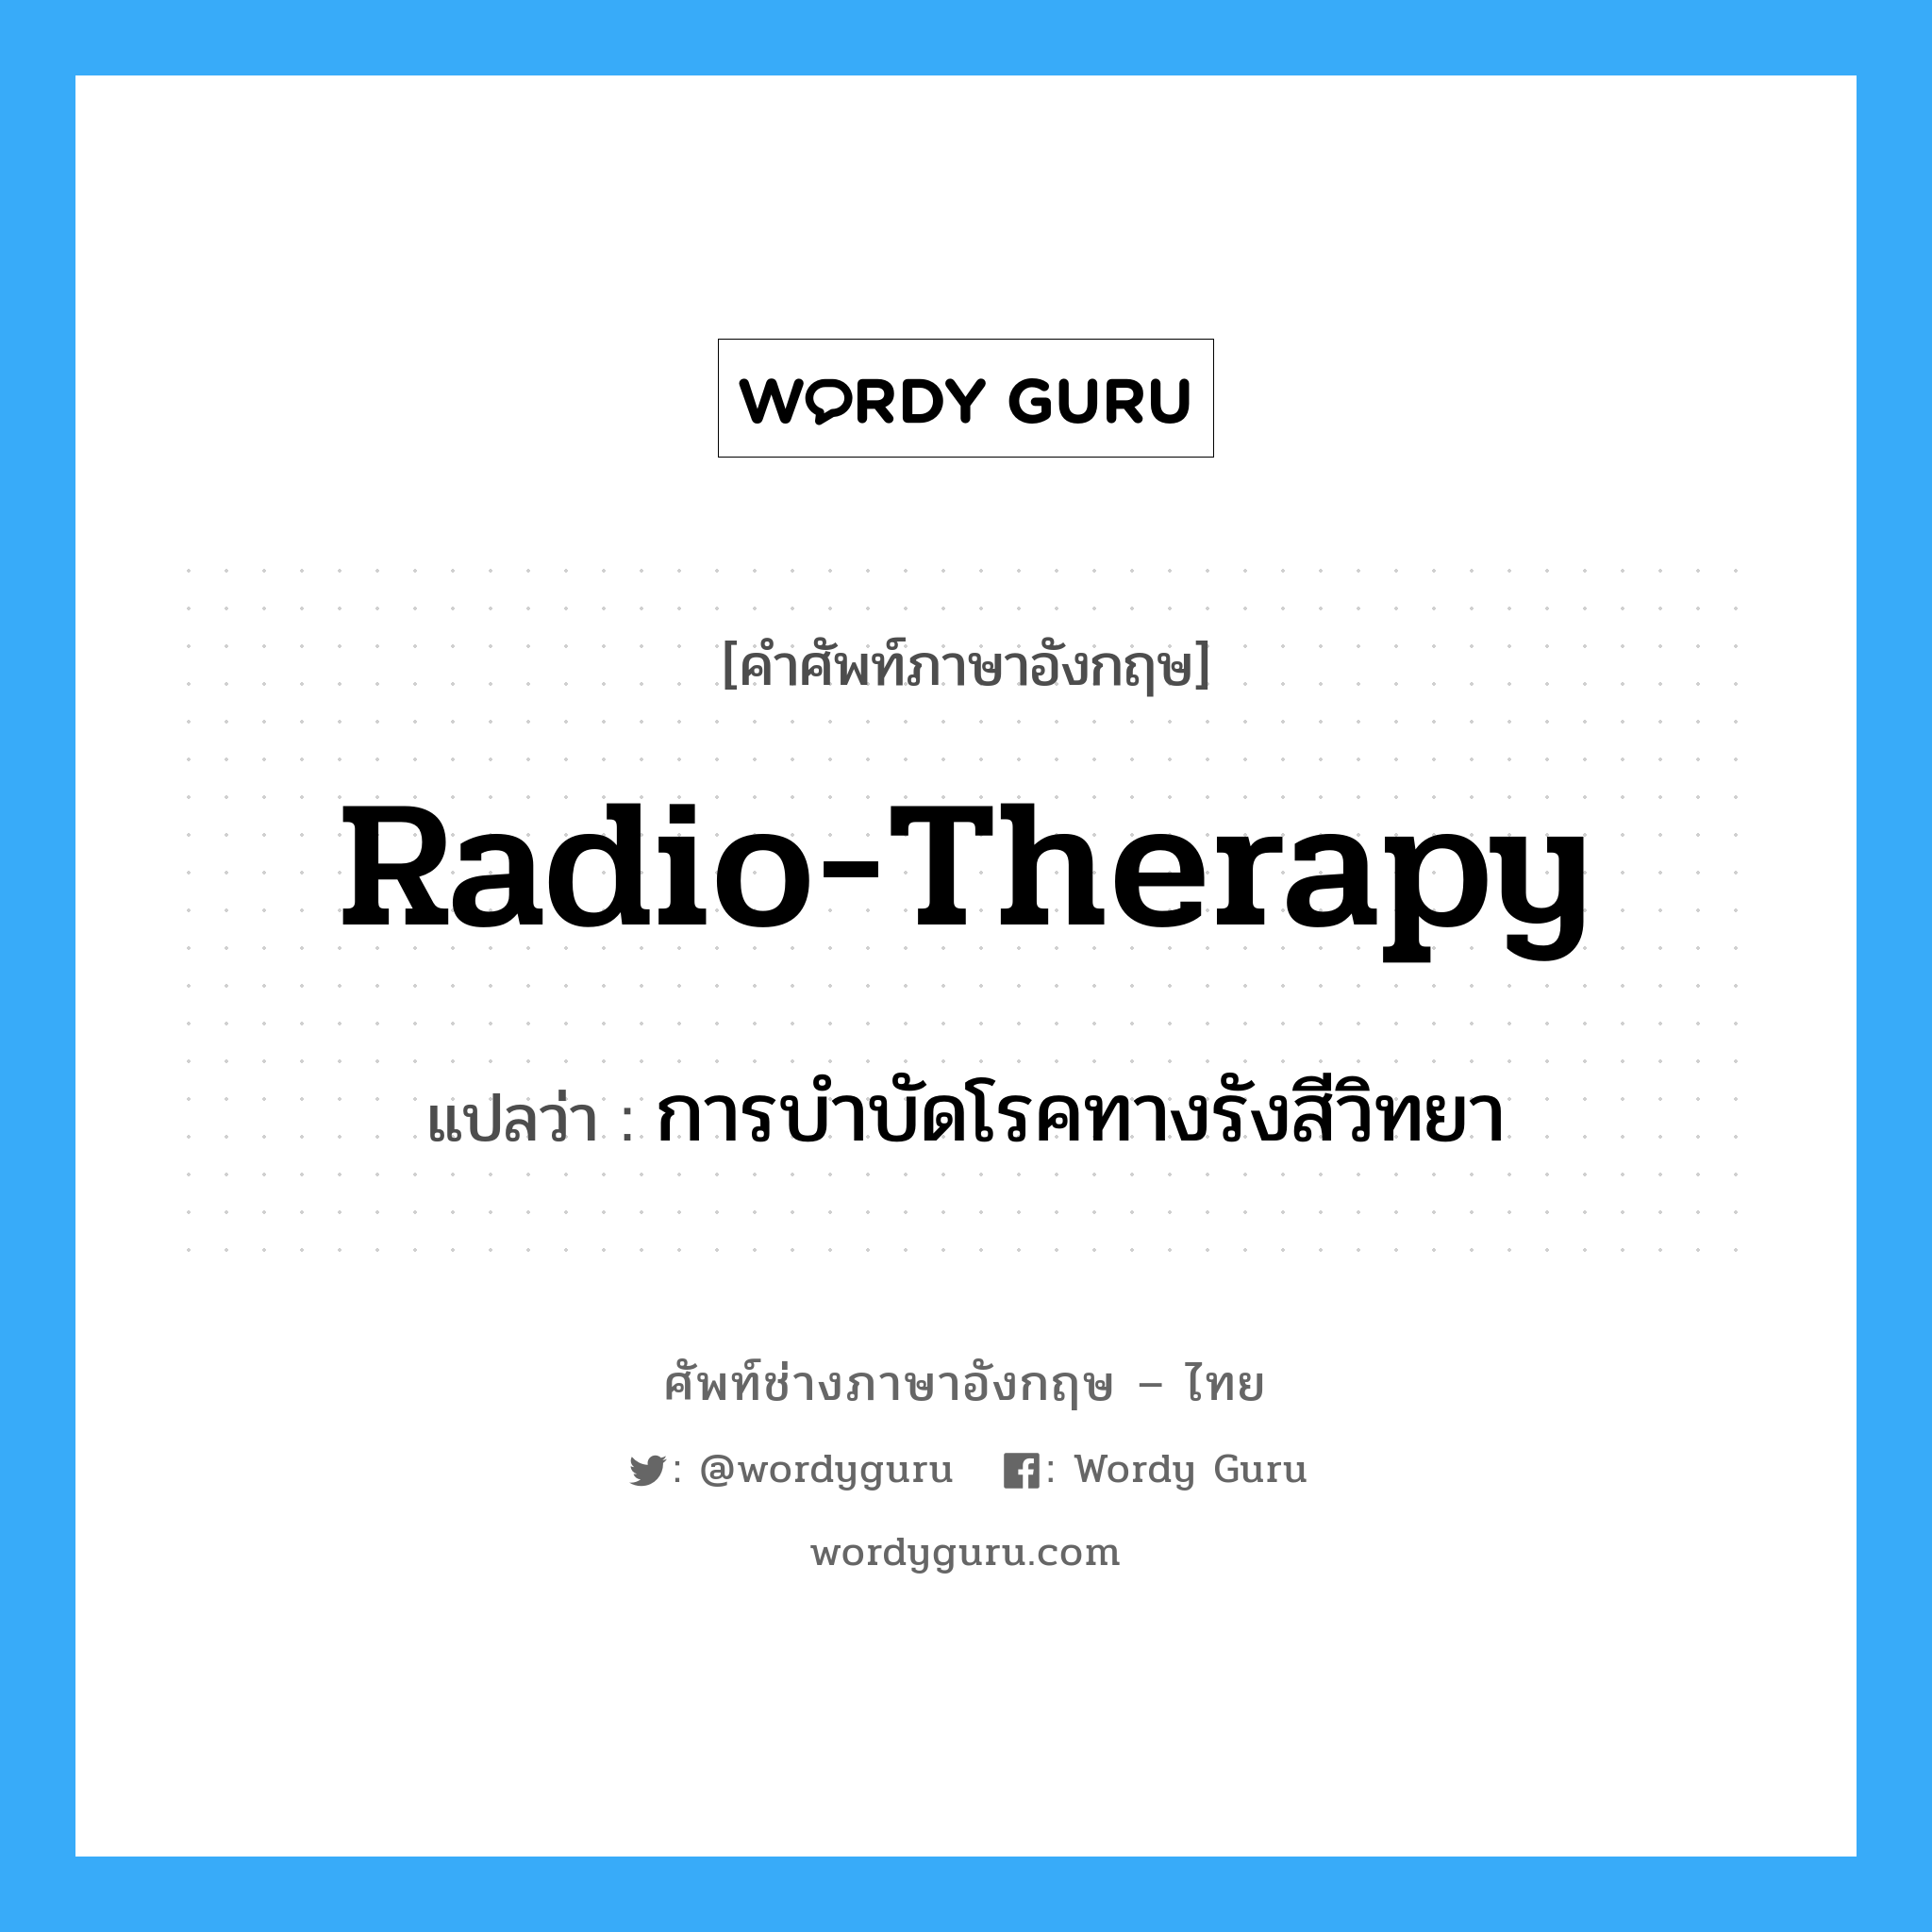 radio-therapy แปลว่า?, คำศัพท์ช่างภาษาอังกฤษ - ไทย radio-therapy คำศัพท์ภาษาอังกฤษ radio-therapy แปลว่า การบำบัดโรคทางรังสีวิทยา